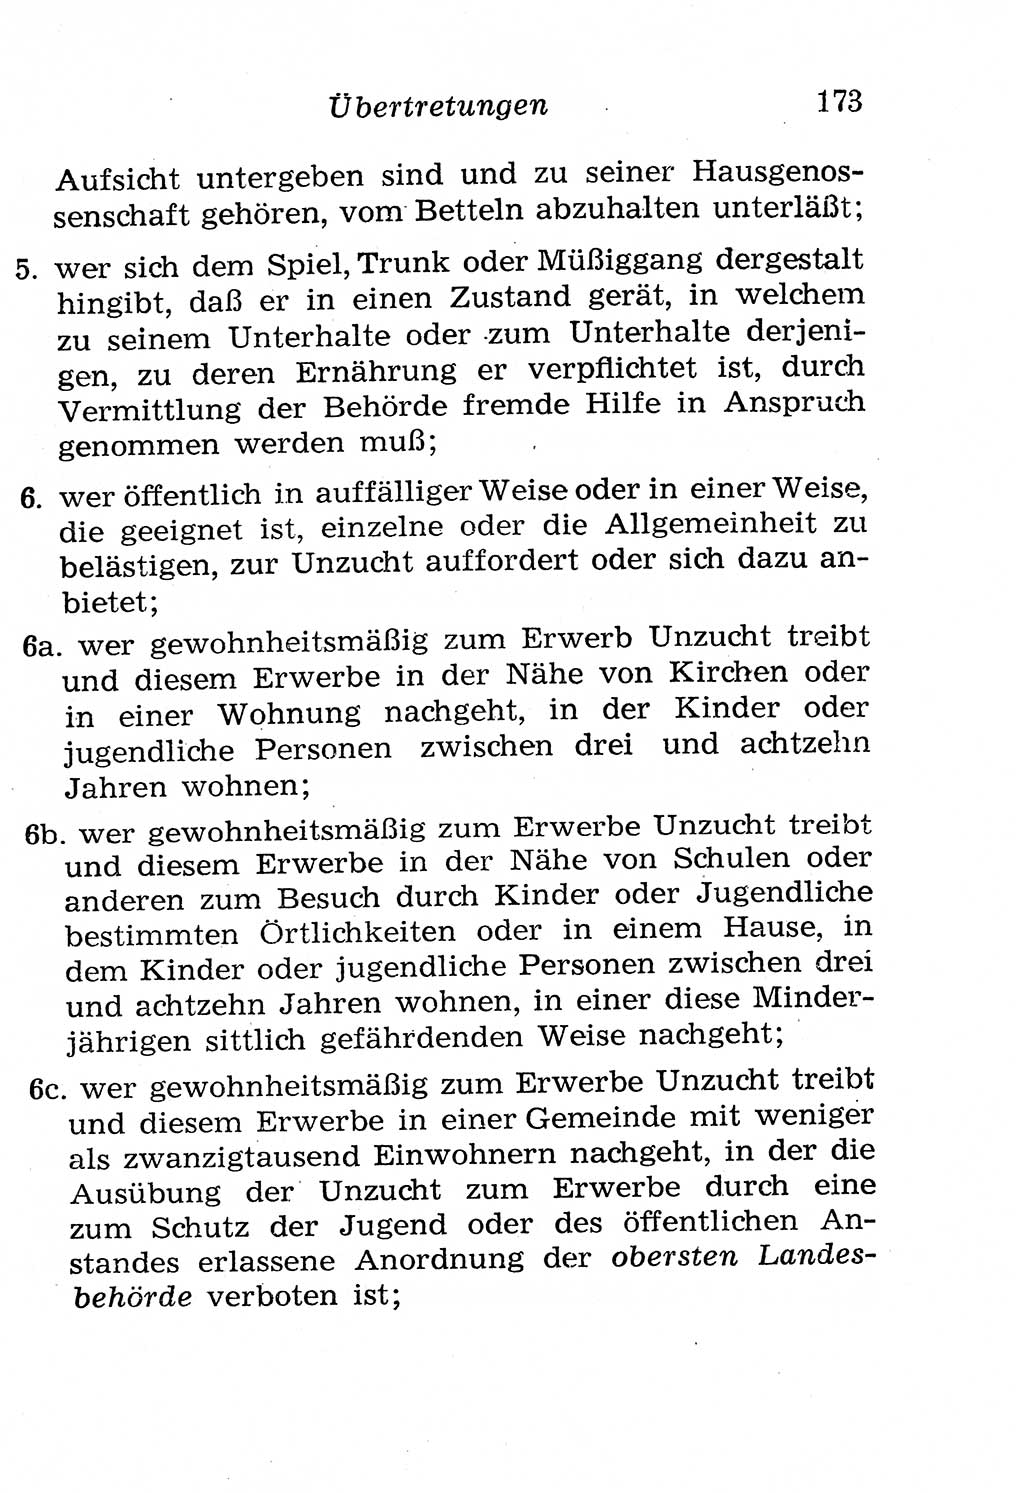 Strafgesetzbuch (StGB) und andere Strafgesetze [Deutsche Demokratische Republik (DDR)] 1958, Seite 173 (StGB Strafges. DDR 1958, S. 173)